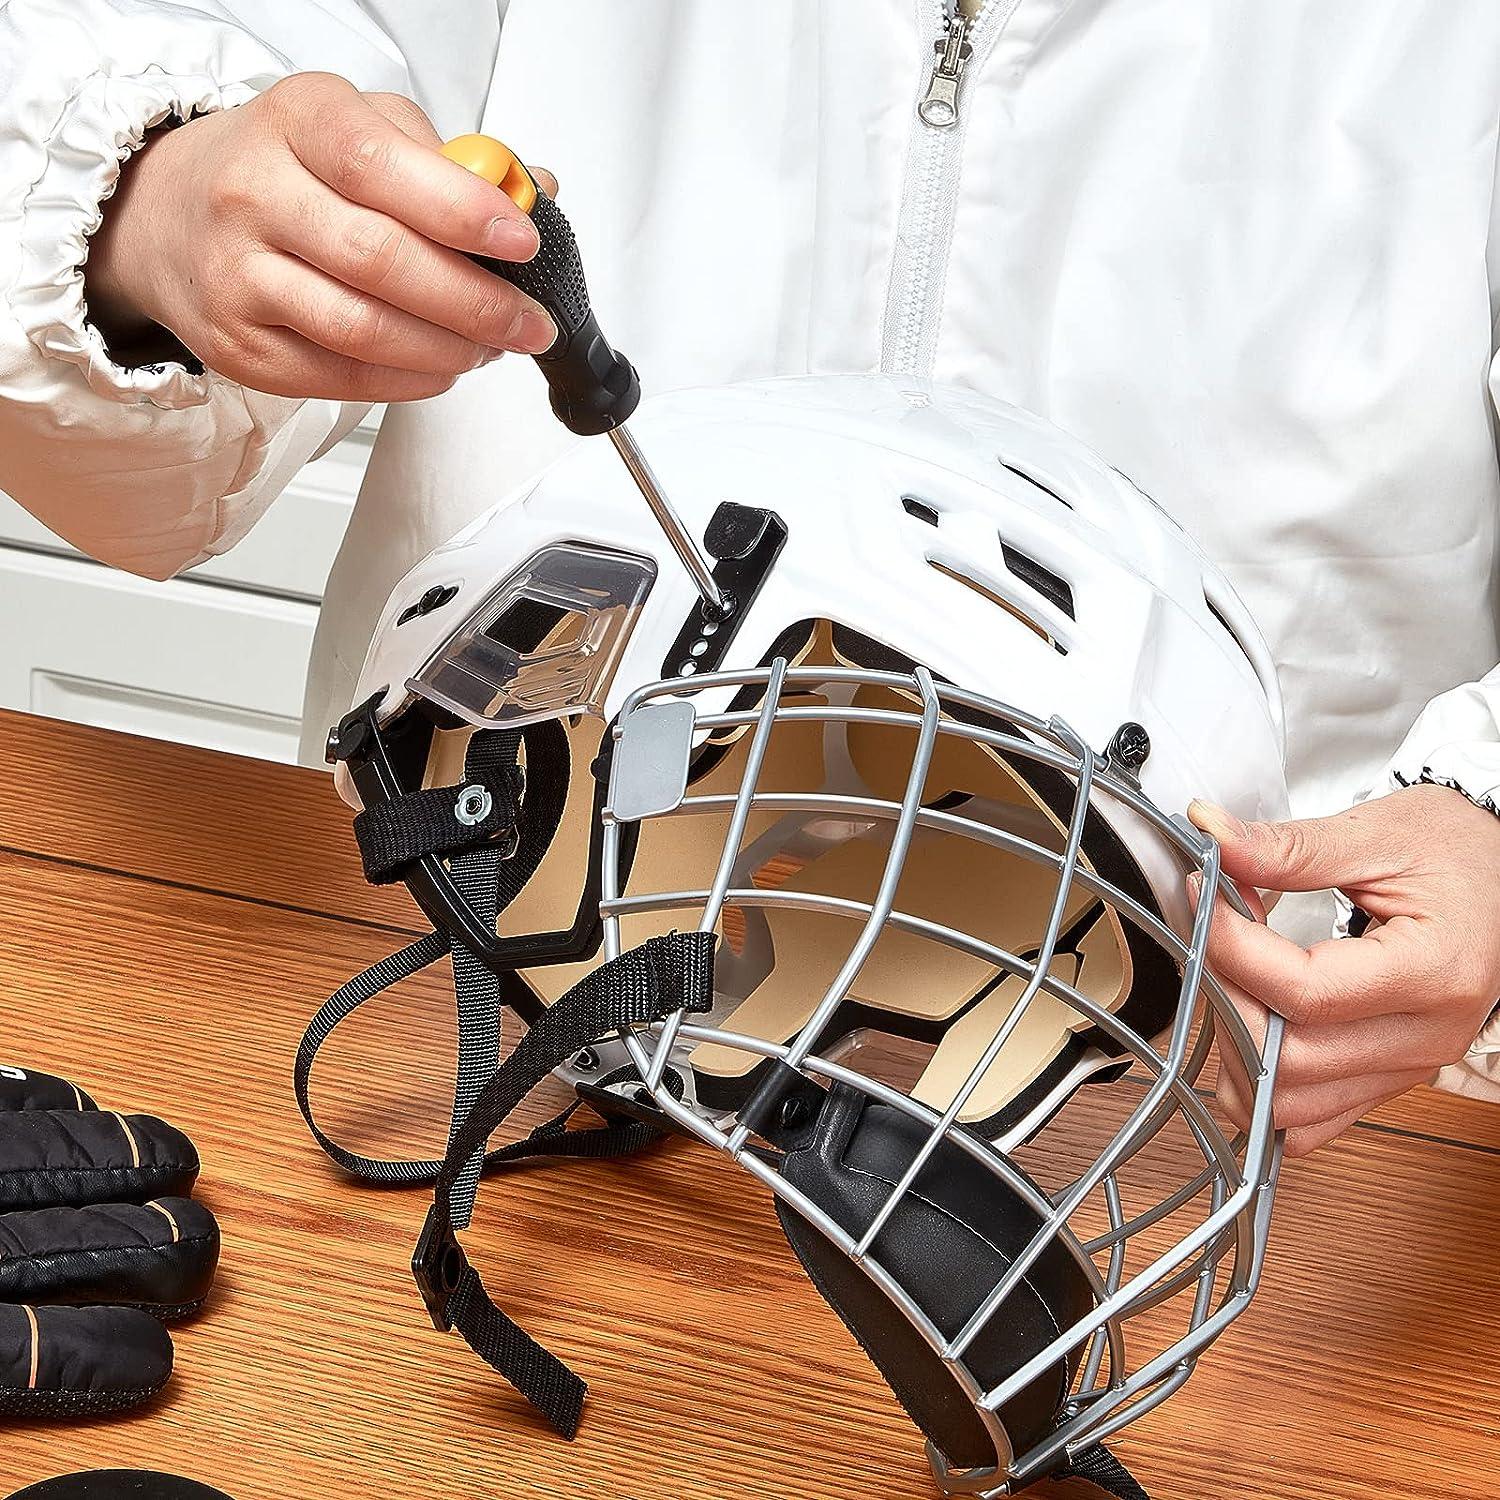 Helmet Repair Kit, 73pcs Sports Helmets Buckle Football Hockey Helmet  Hardware Kit Including Stainless Steel R Shape Football Visor Clips, Rubber